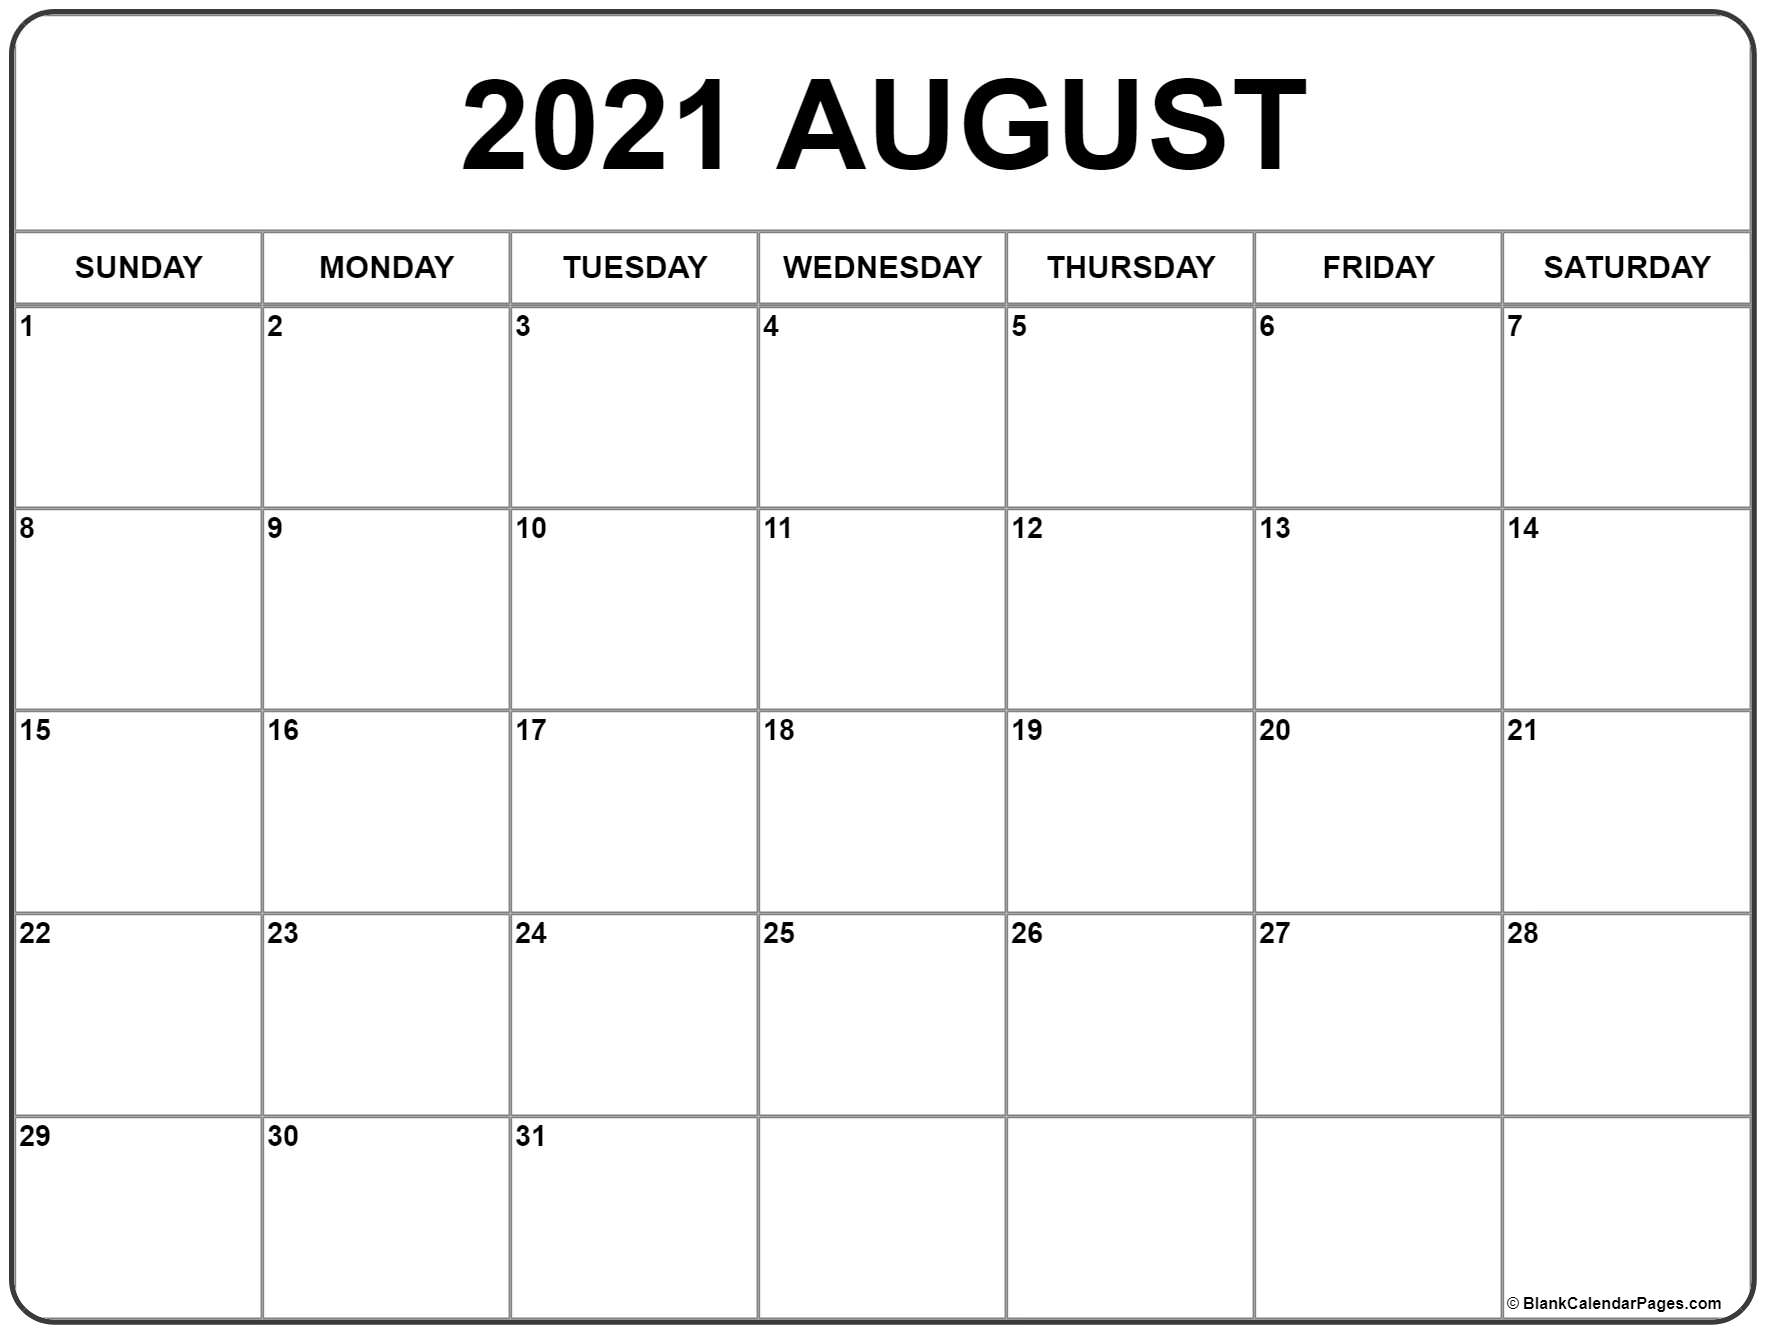 Take Kalender 2021 Augustus September